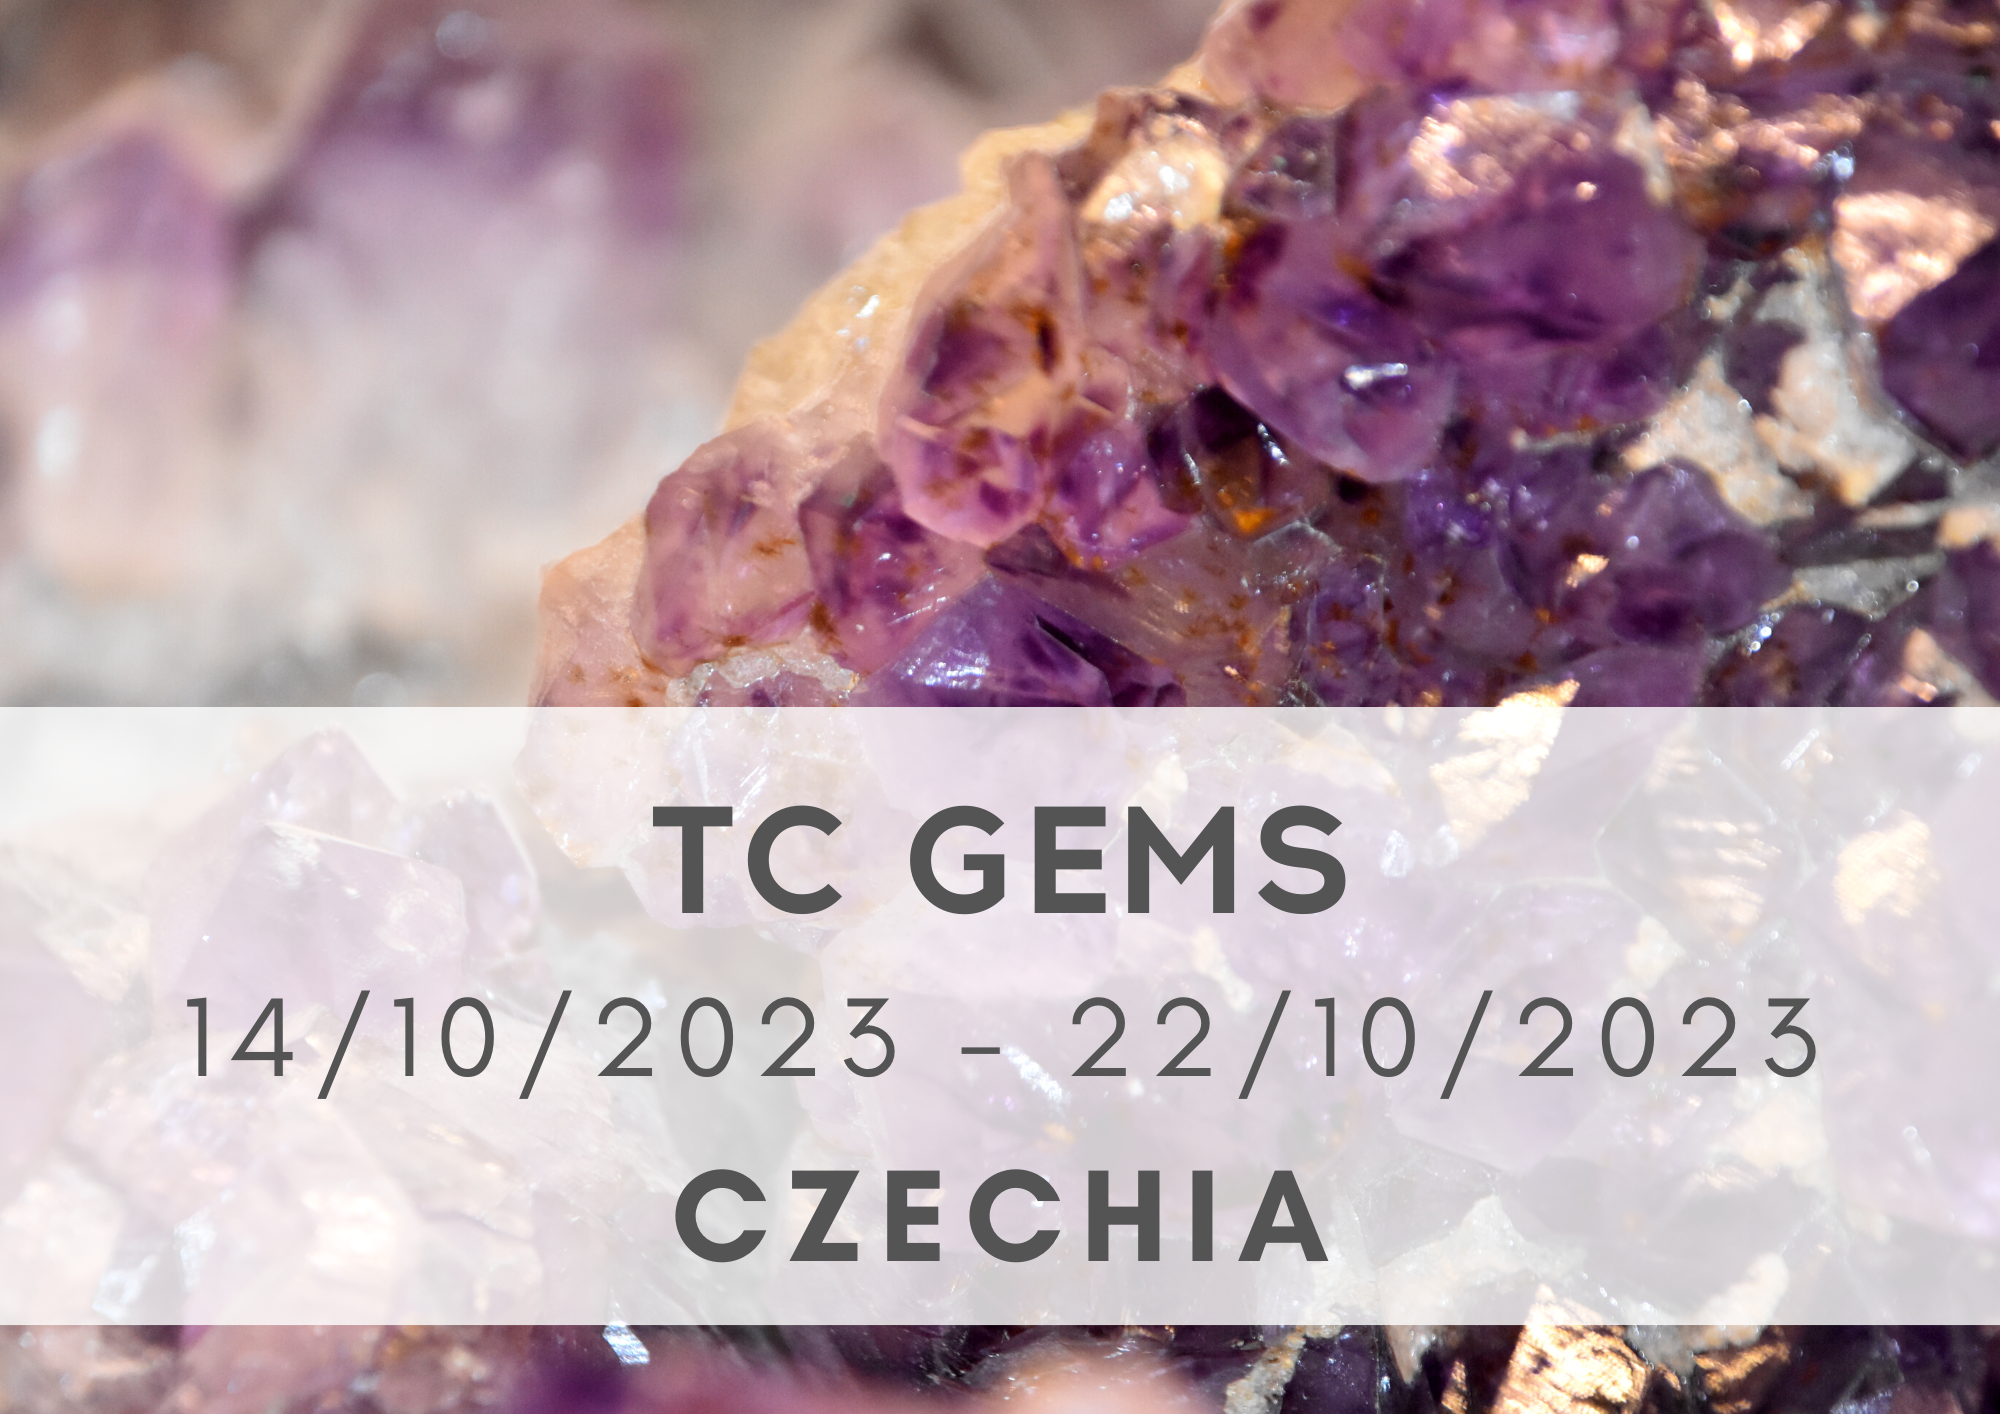 TC GEMS, Czechia, 14-22/10/2023